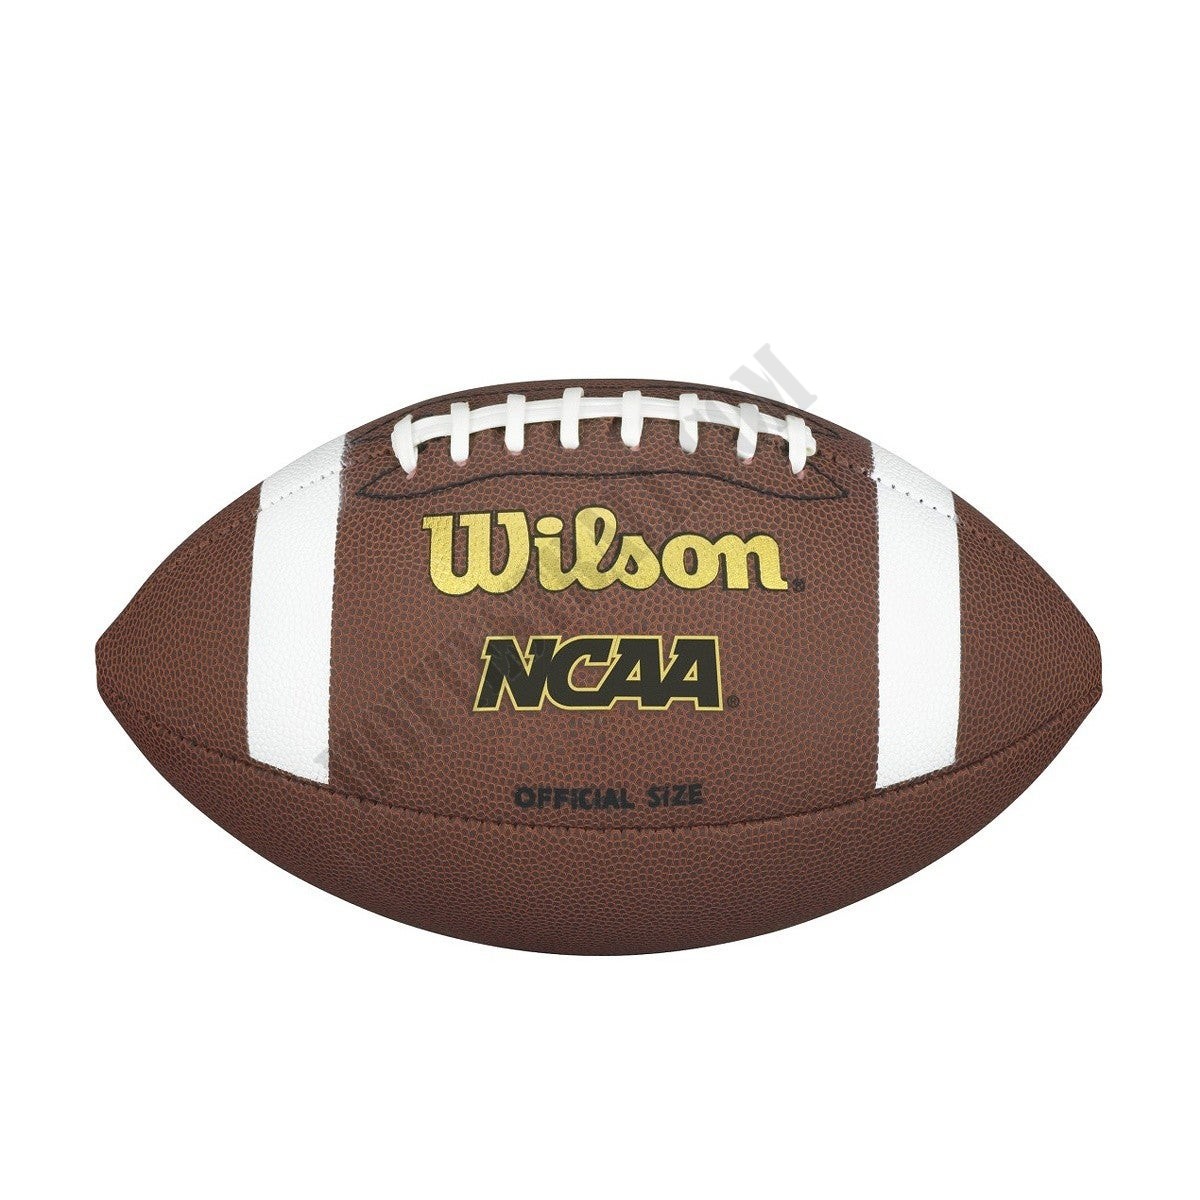 NCAA Official Composite Football - Official (14+) - Wilson Discount Store - NCAA Official Composite Football - Official (14+) - Wilson Discount Store